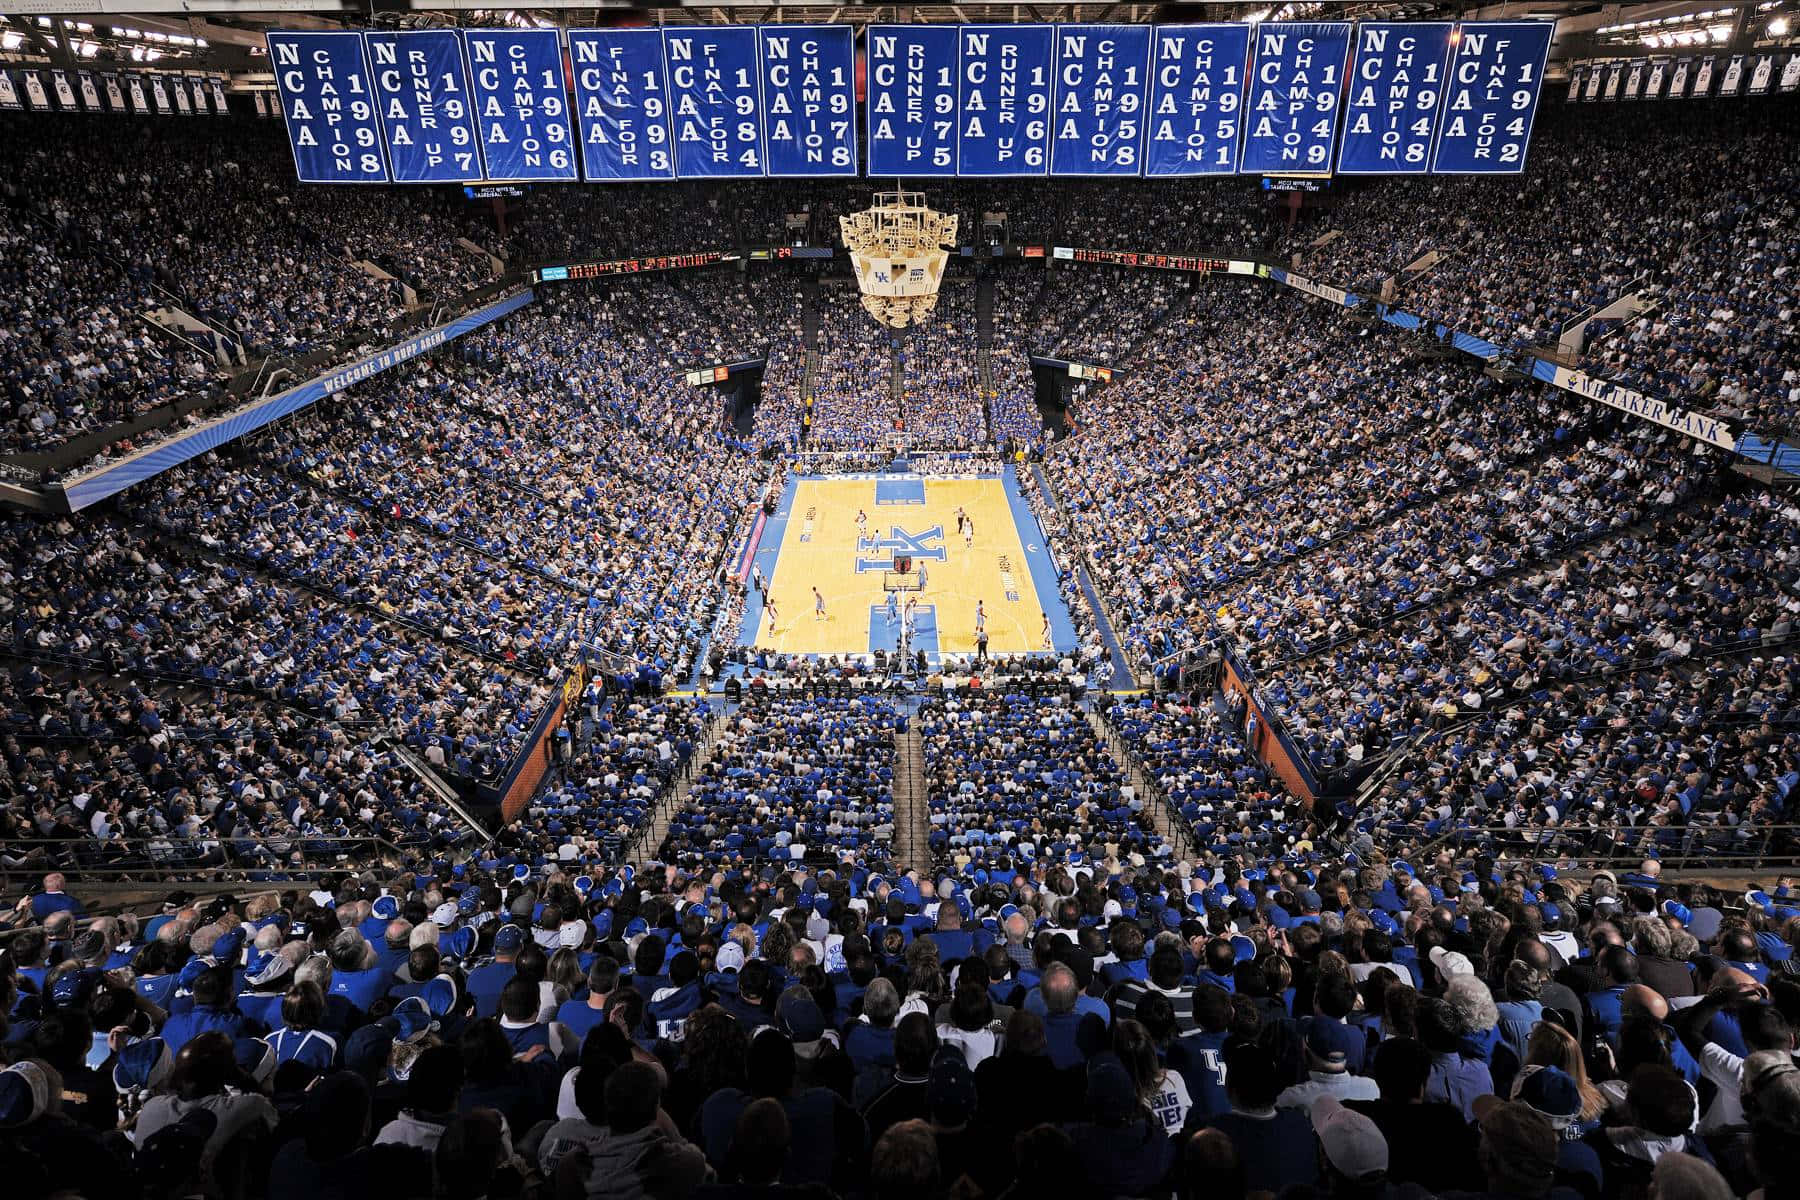 Unjuego De Baloncesto En Un Gran Estadio Con Aficionados De Color Azul Y Blanco. Fondo de pantalla